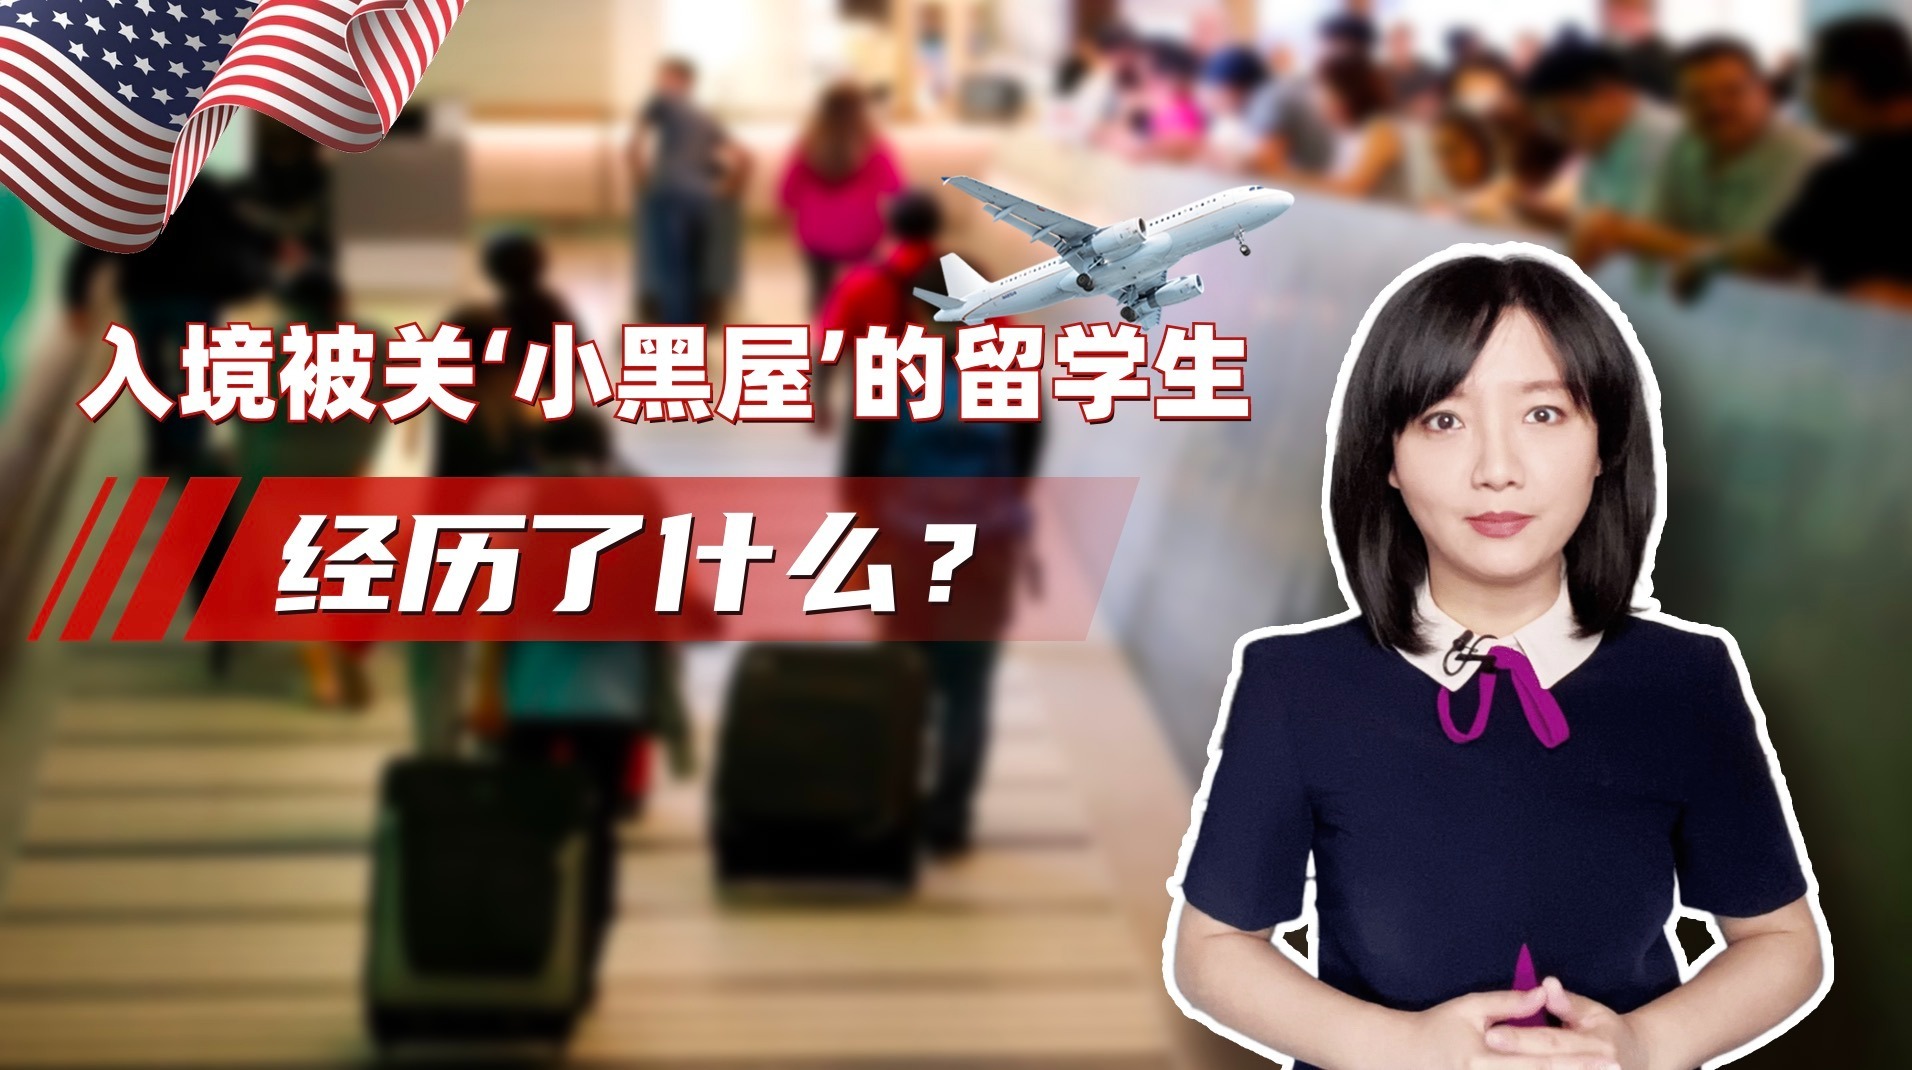 赴美留学有多难？中国留学生花10万买天价机票，还要被关小黑屋审问|冰汝看美国